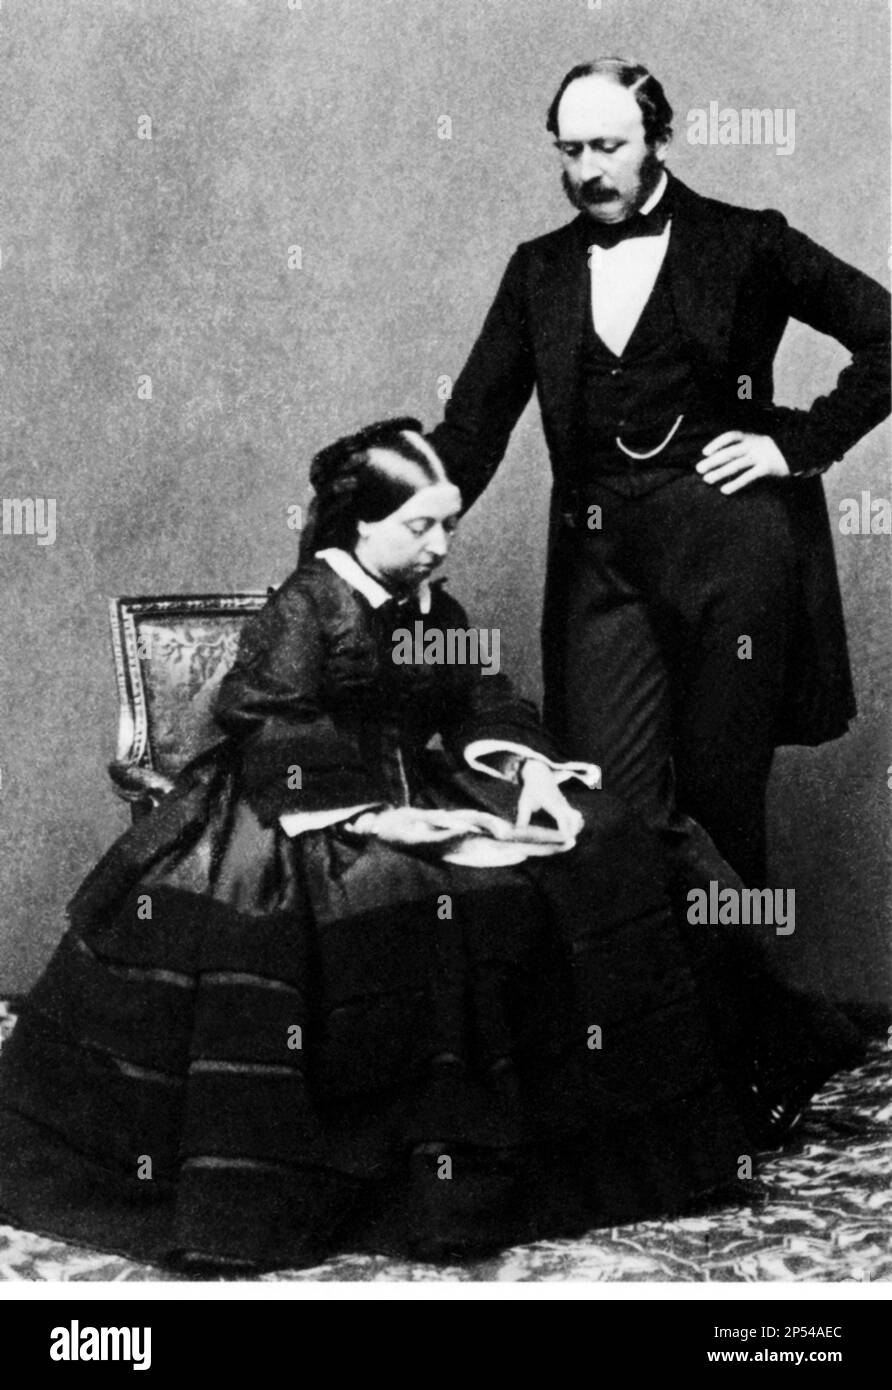 1858 ca. : Il Principe Consort ALBERTO di SASSONIA COBURG GOTHA SAALFELD ( 1819 - 1861 ) con la moglie Regina Vittoria Hannover d'Inghilterra ( 1819 - 1901 ) - REALI - NOBILI - ROYALTY - NOBILTÀ - INGHILTERRA - GRAND BRETAGNA - REGNO UNITA - principe consorte - ritratto - ritratto - baffi - baffi - favori - papillon cravatta - cravatta - fiocco - catena dell'orologio - Cave - WINDSOR - VITTORIA REGINA - marito e moglie - Coniugi ---- Archivio GBB Foto Stock